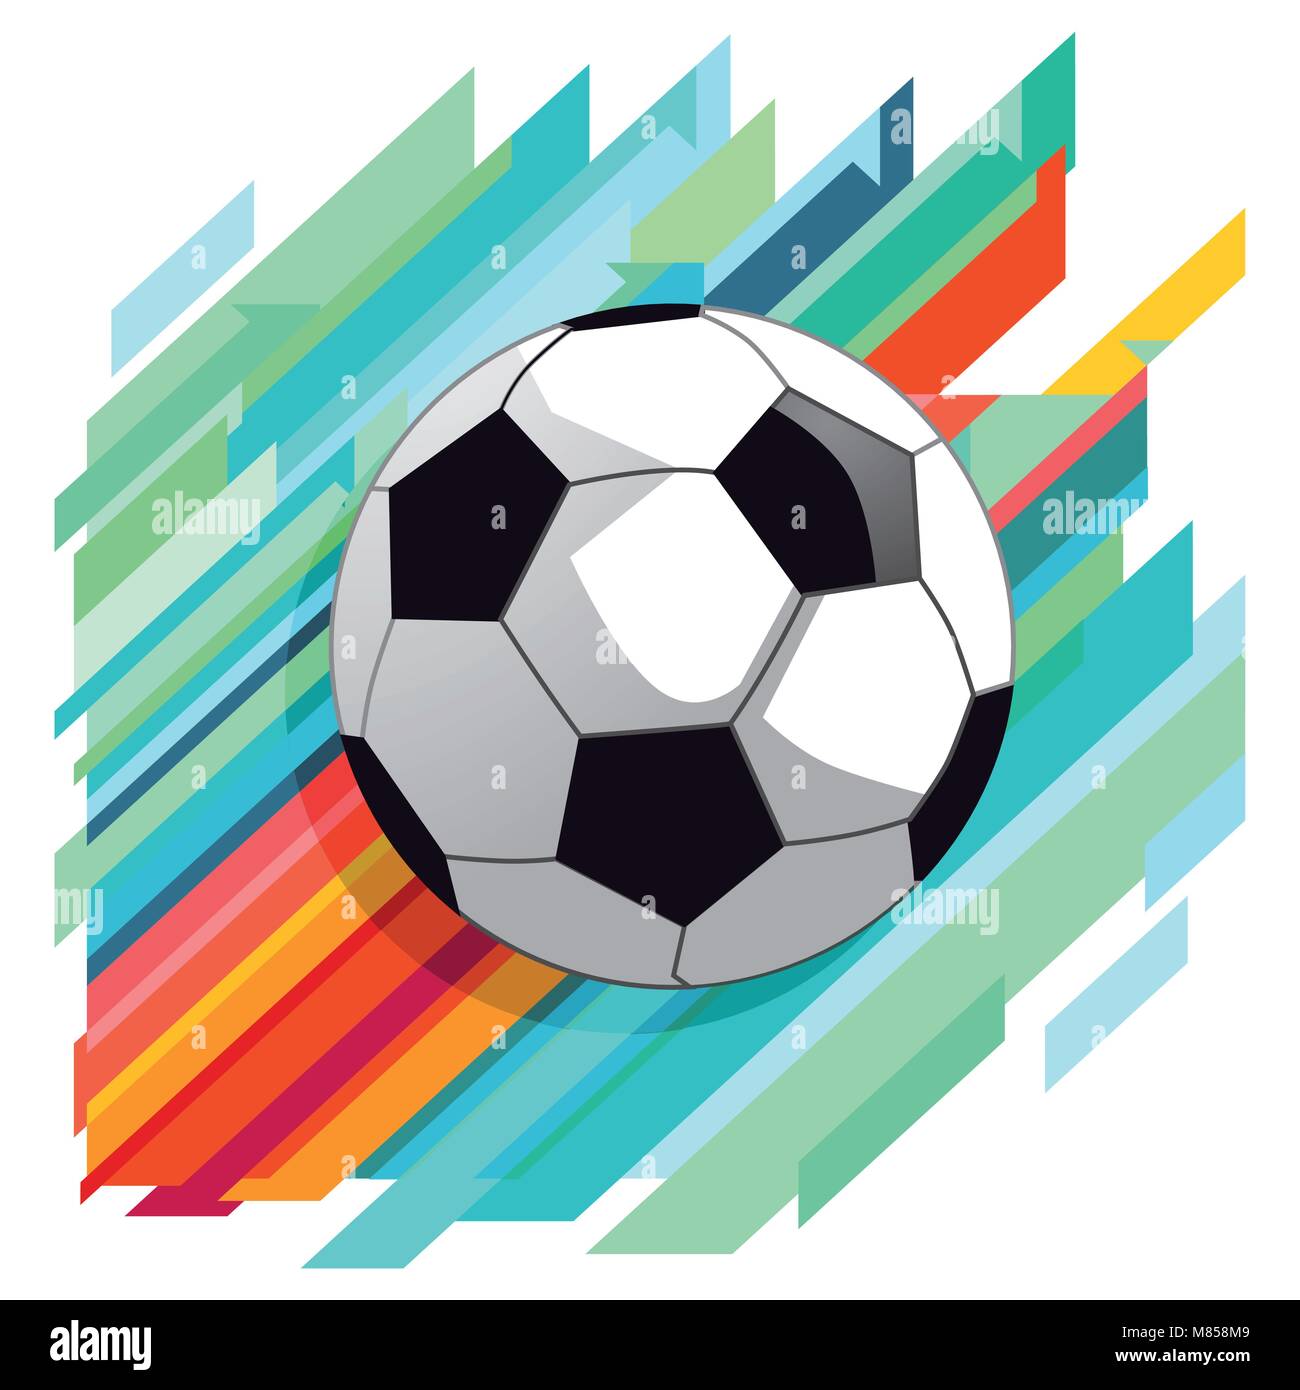 Soccer shot on goal dynamic, illustration Stock Vector